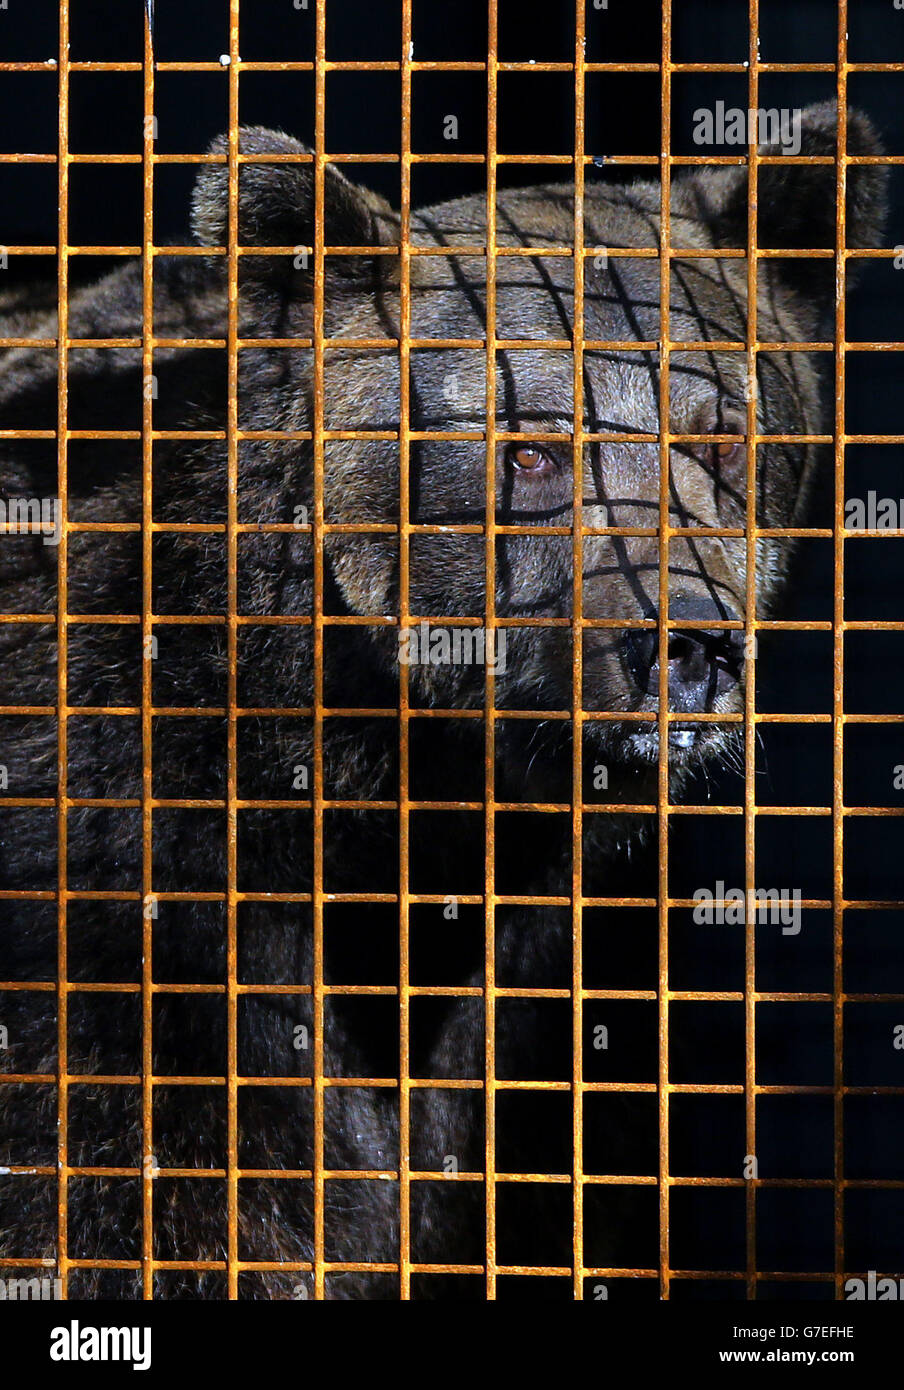 Gosho, un oso marrón europeo, se aparta de su recinto de cuarentena en el Wildwood Animal Trust en Herne, Kent, tras ser rescatado de un centro de cría de osos abandonados en Bulgaria que sufre de negligencia. Foto de stock